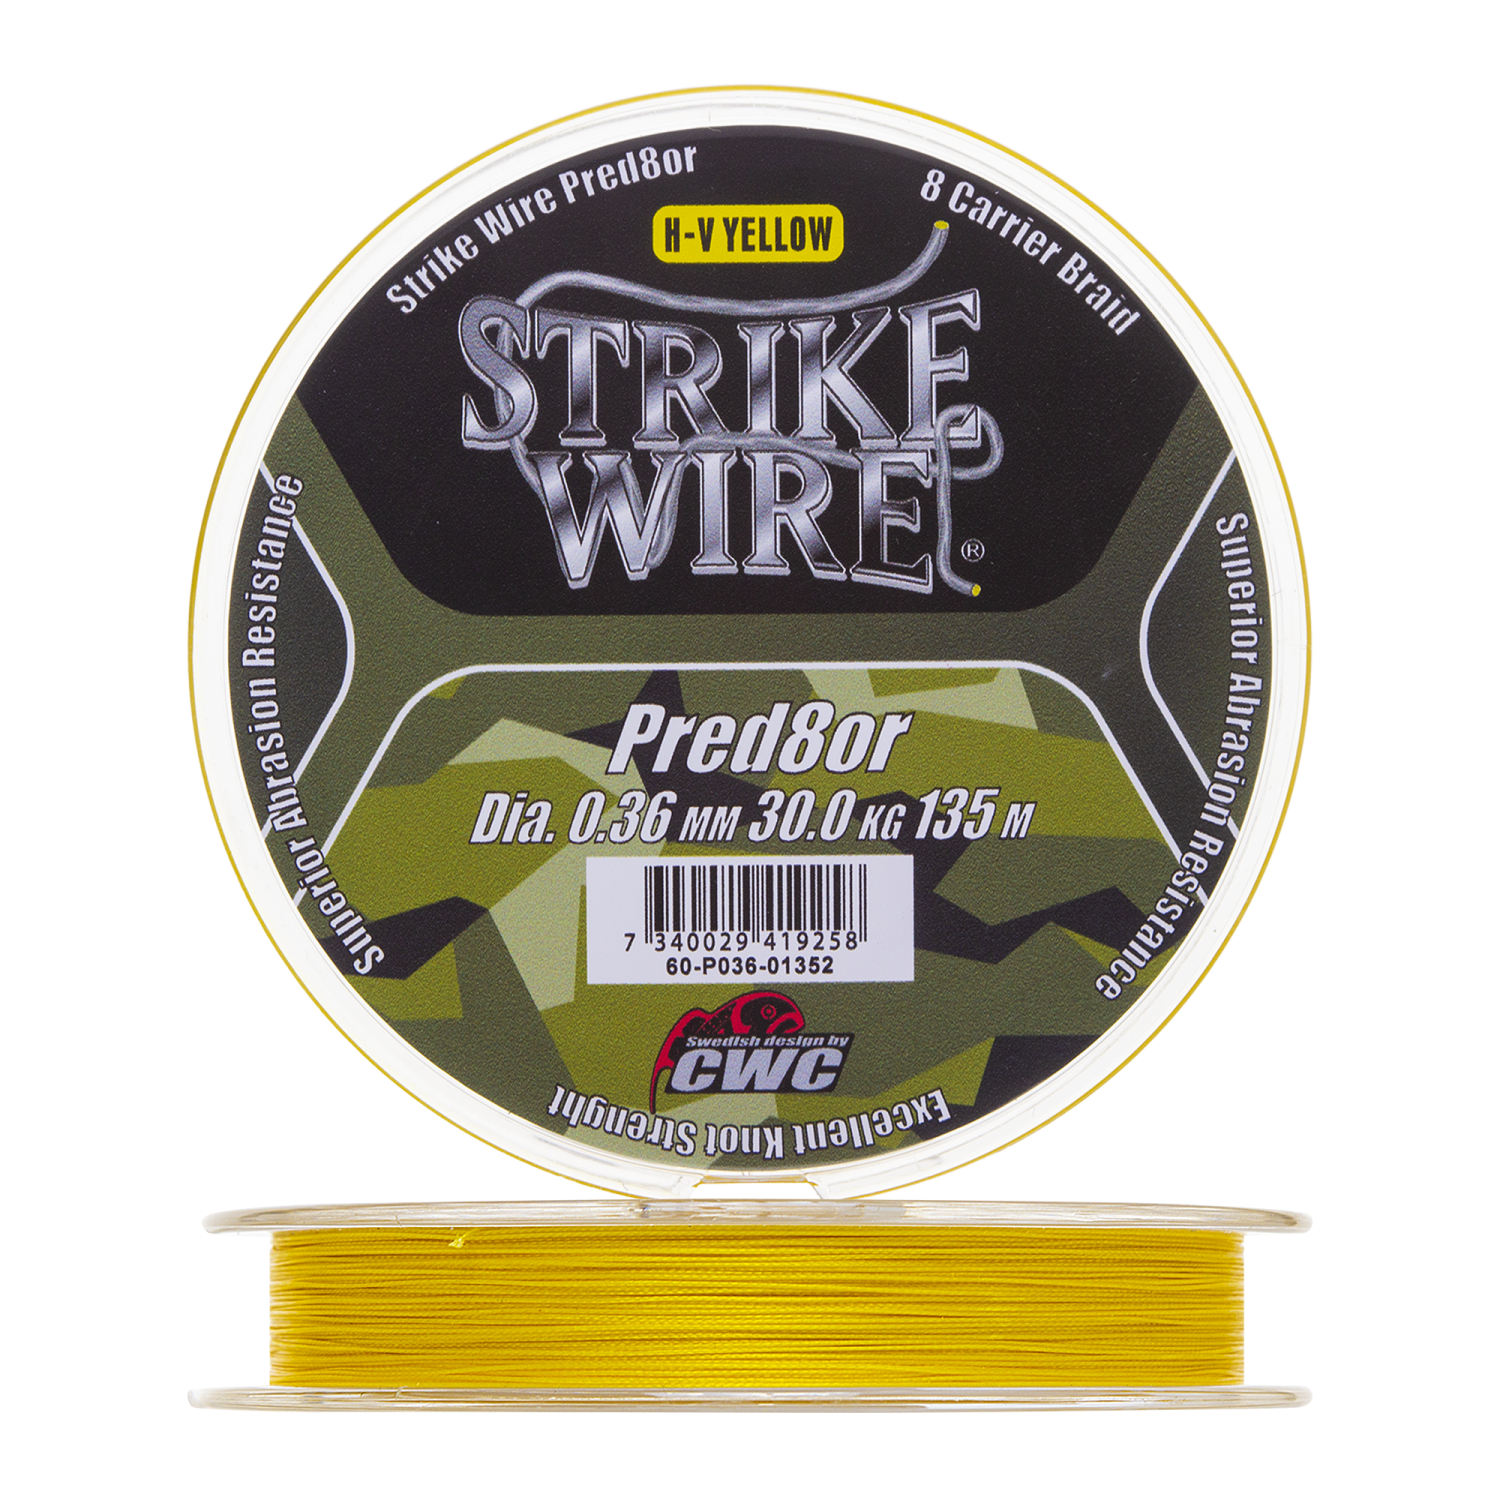 Шнур плетеный CWC Strike Wire Pred8or X8 0,36мм 135м (h-v yellow)